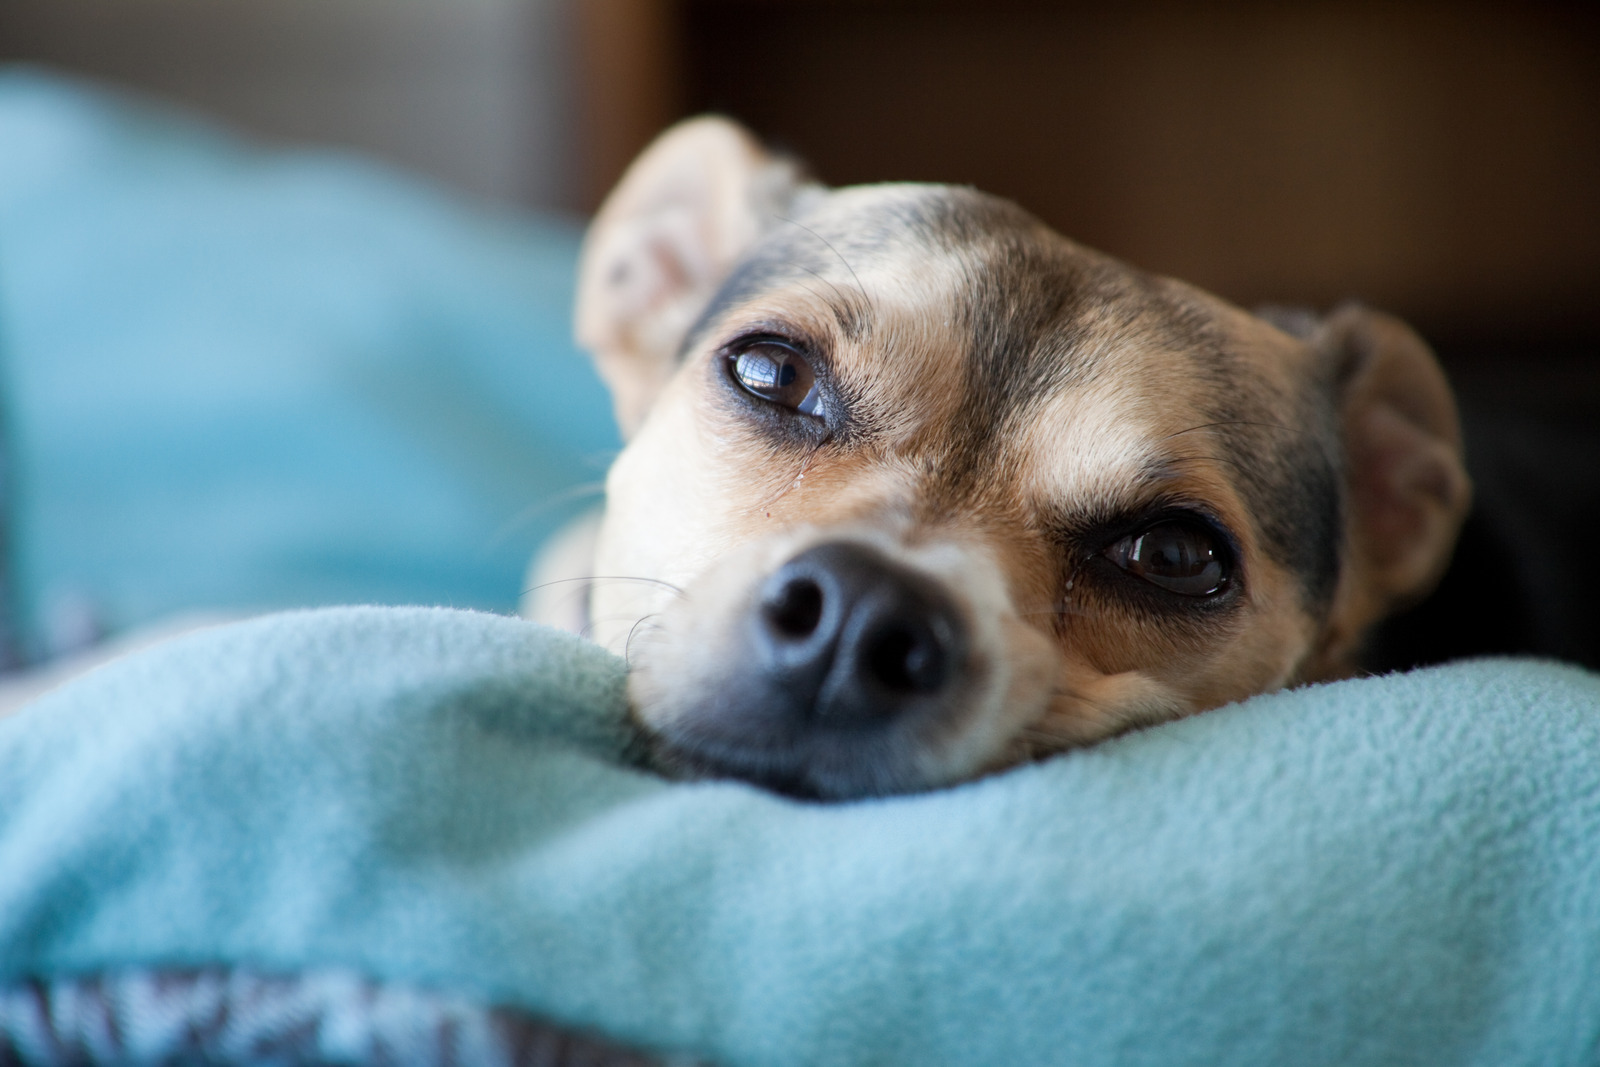 Closeup van hond die ligt met kop op blauwe deken om te rusten na castratie en kijkt in camera